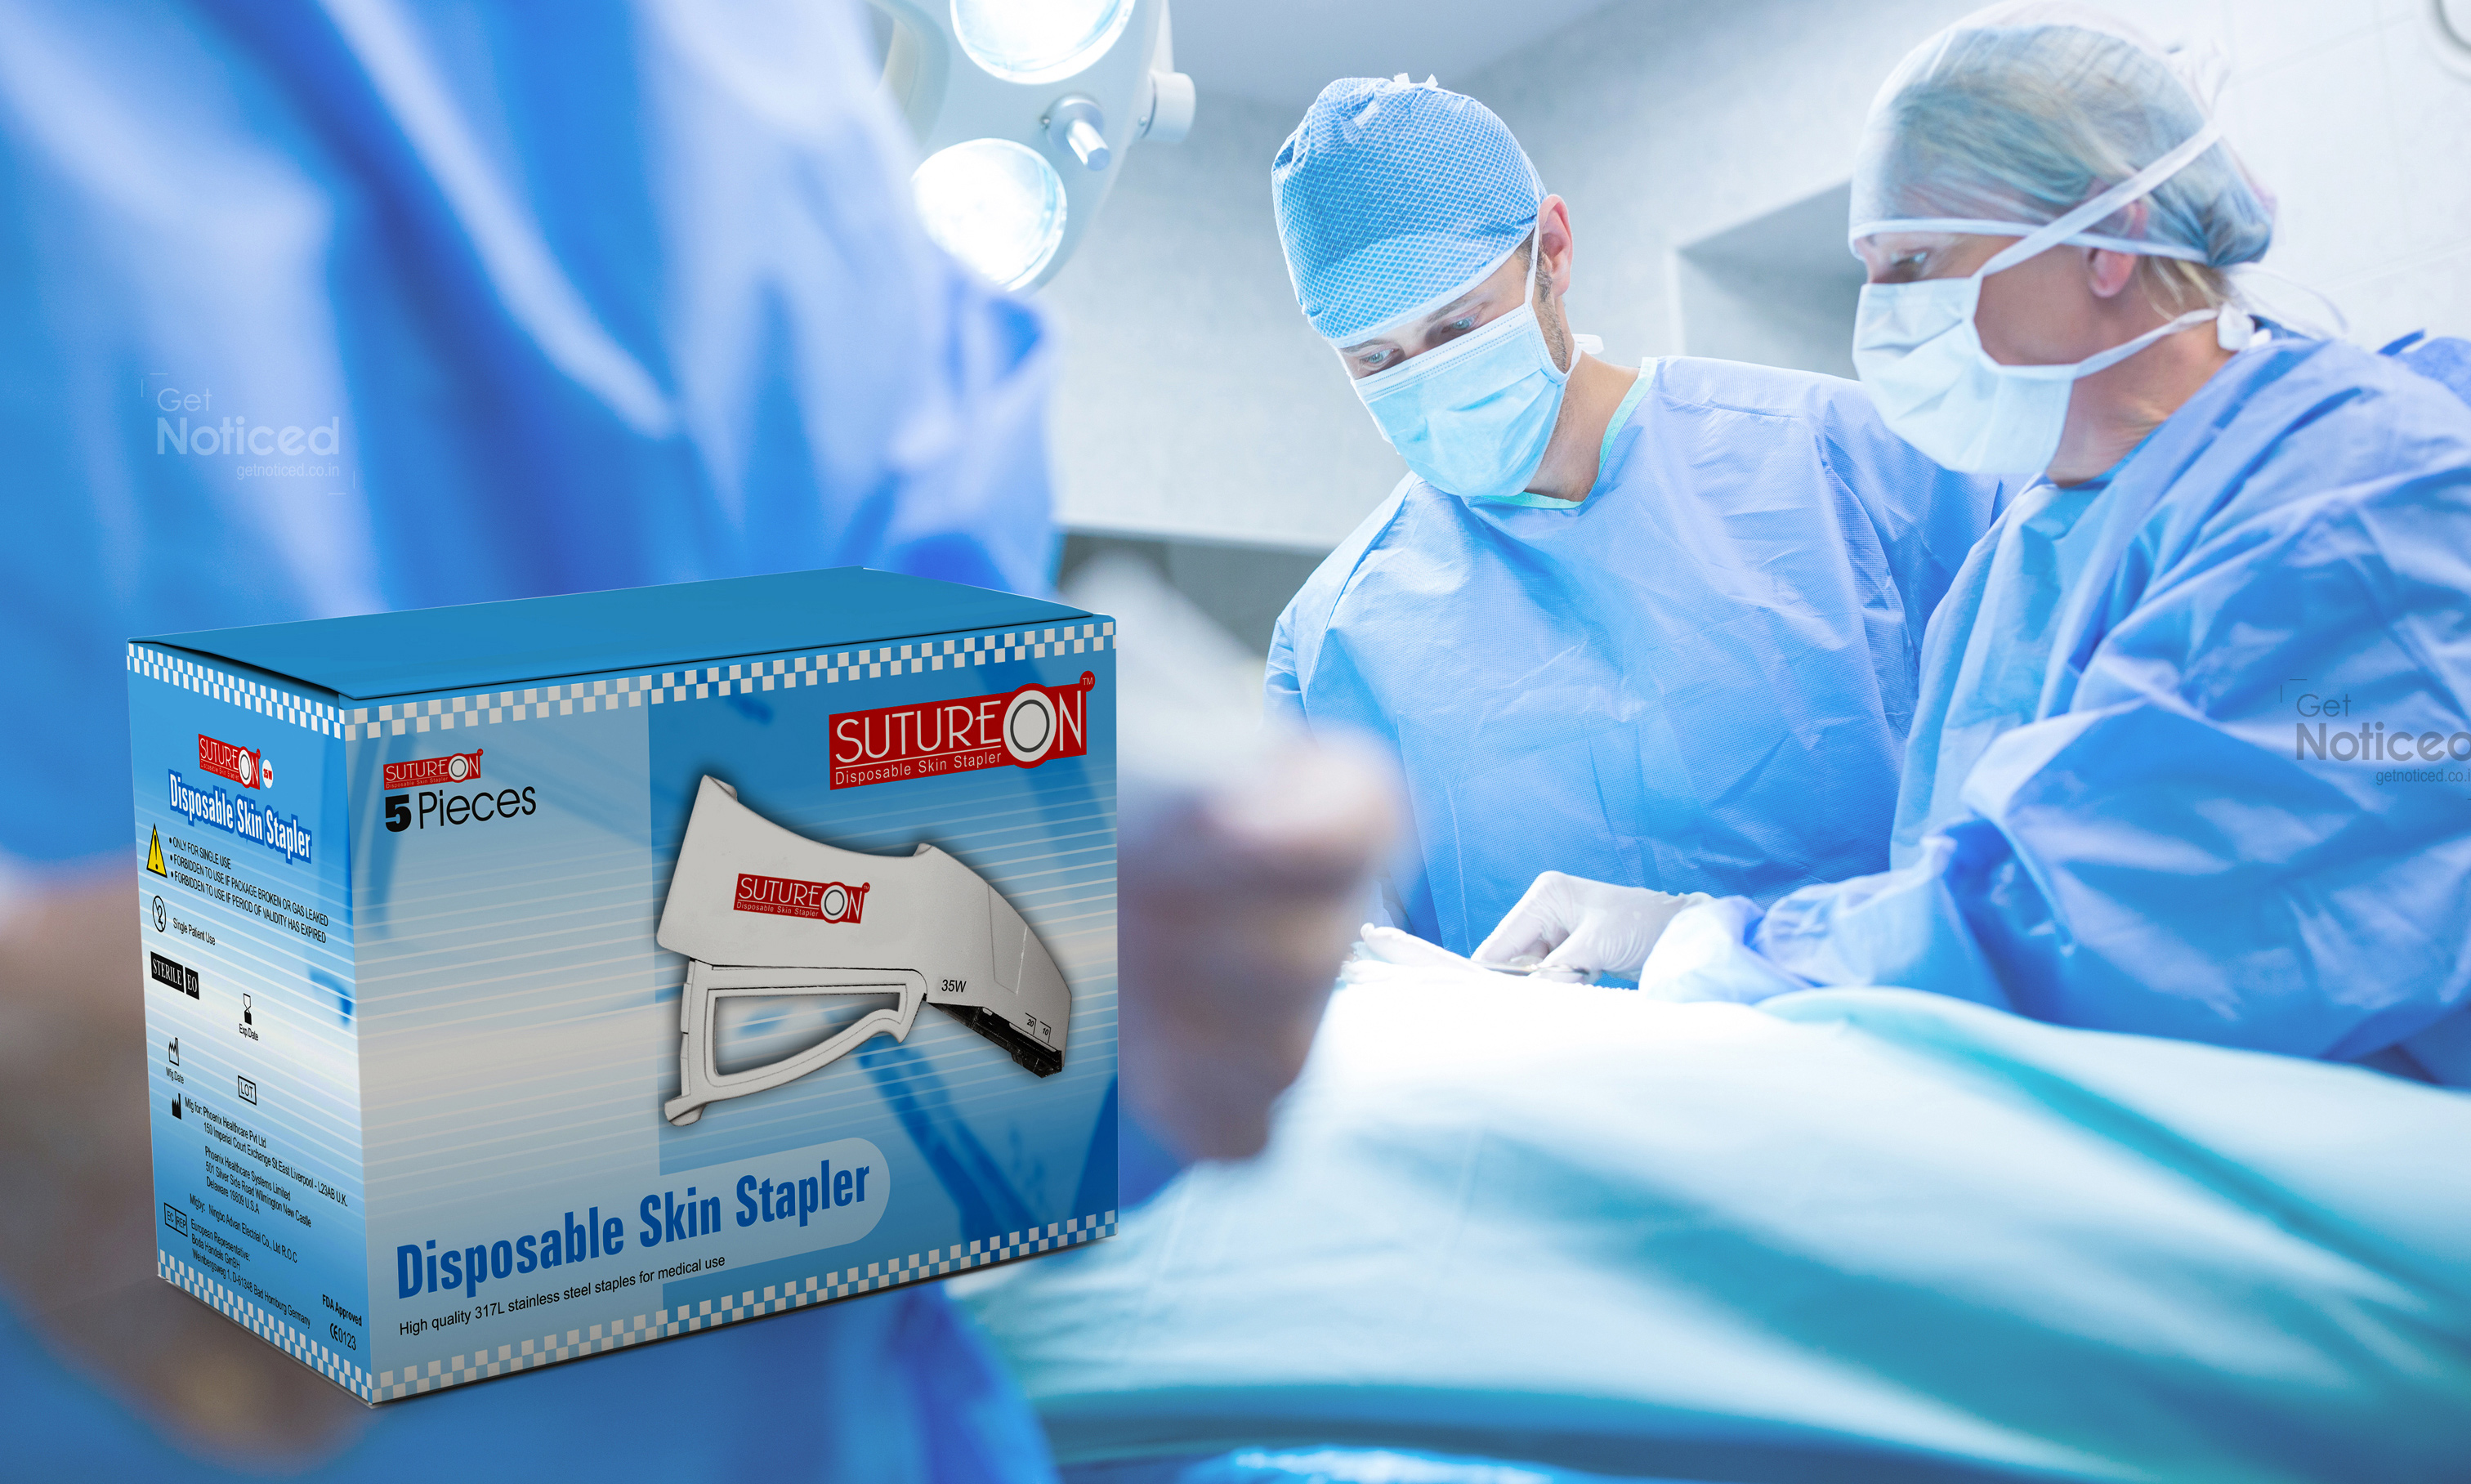 sutureon skin stapler packaging design